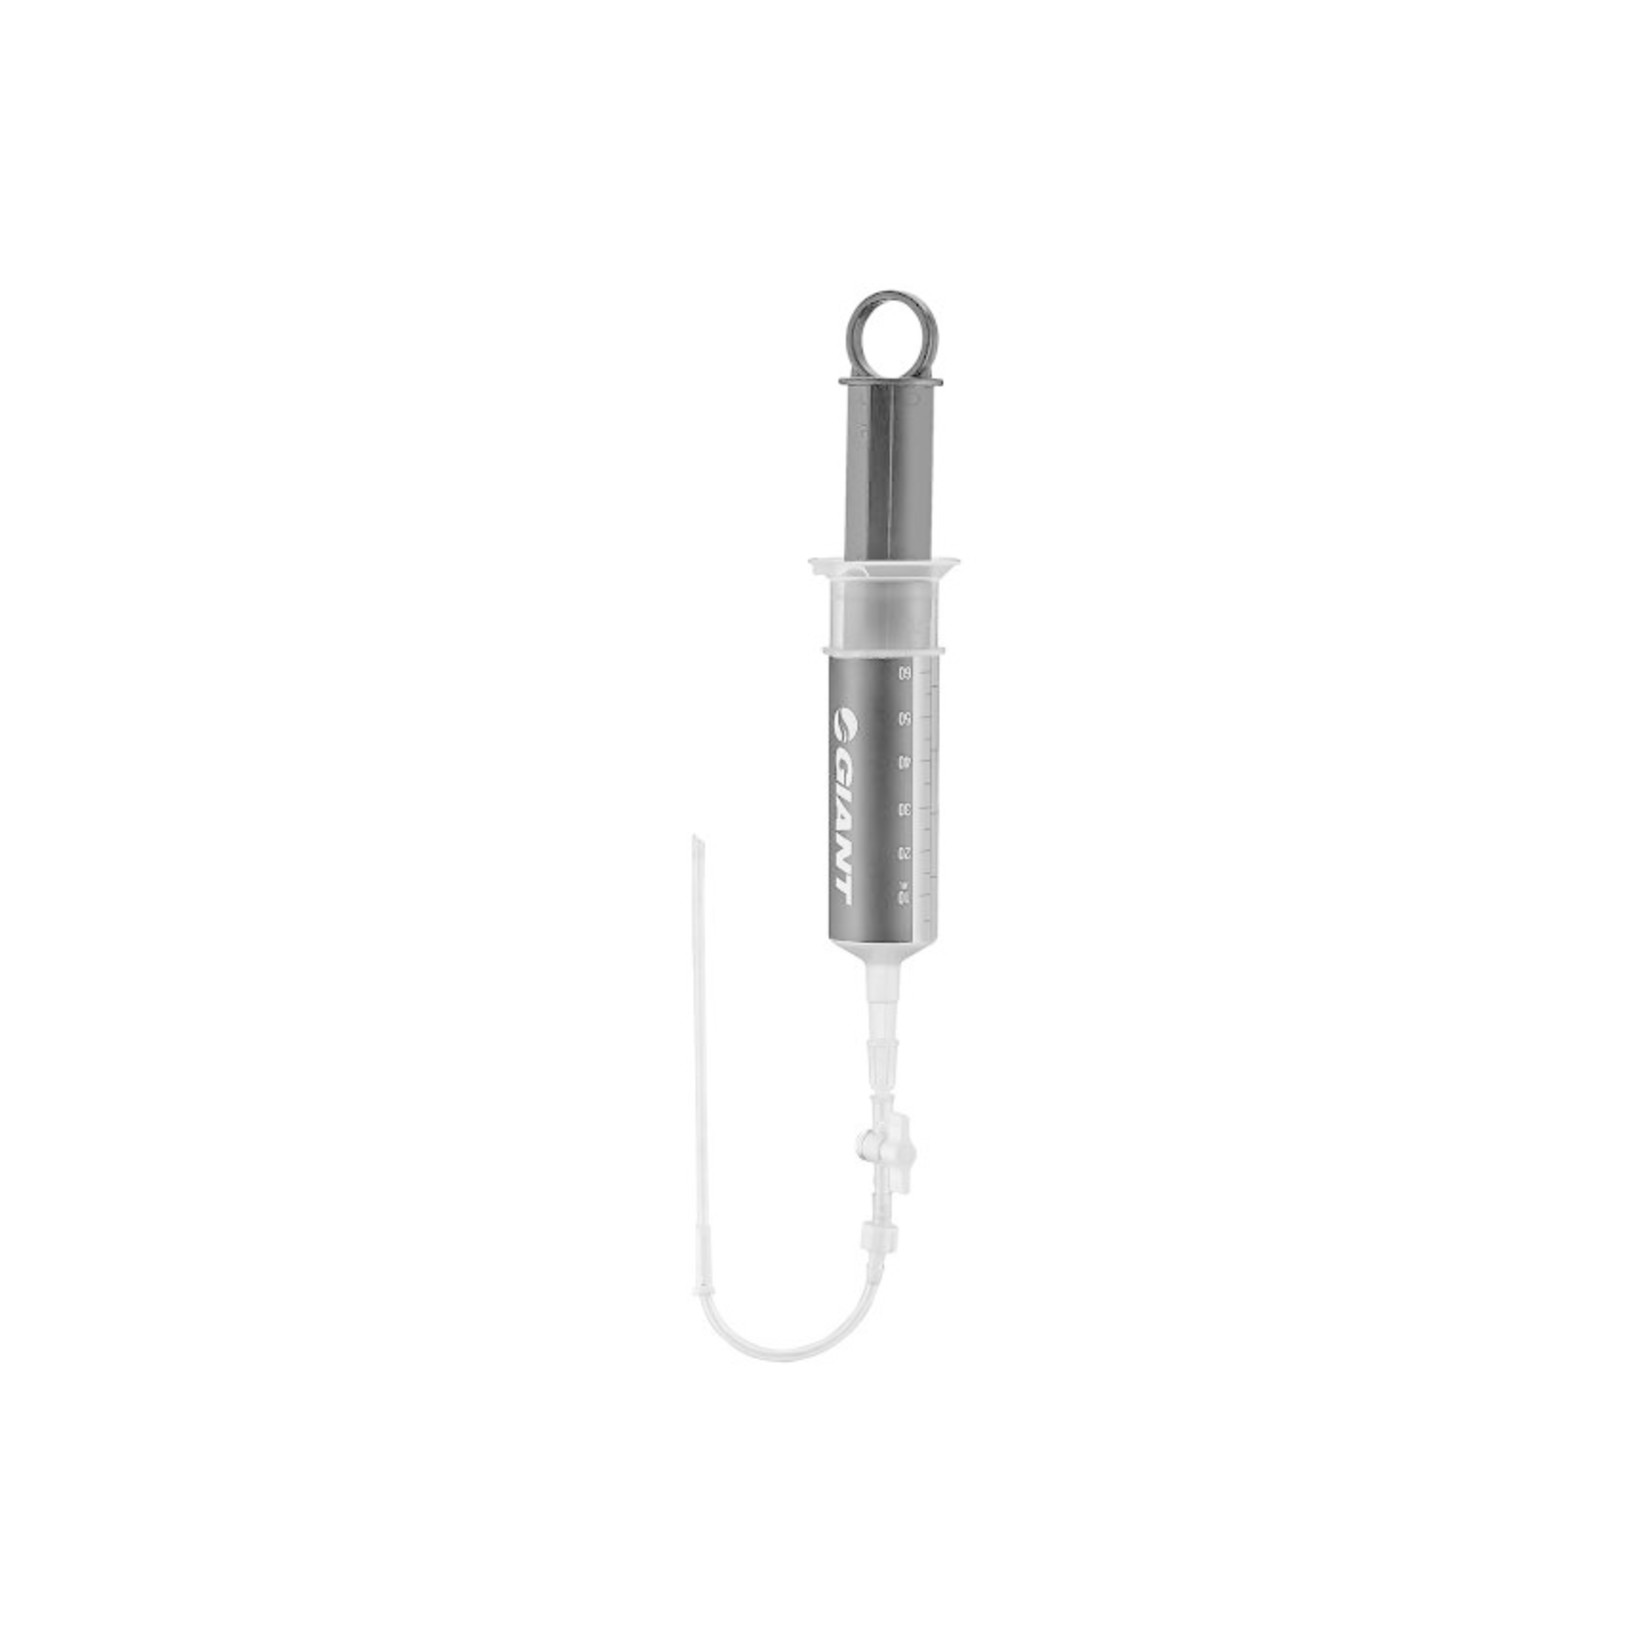 Giant GIA Sealant Check & Refill Syringe